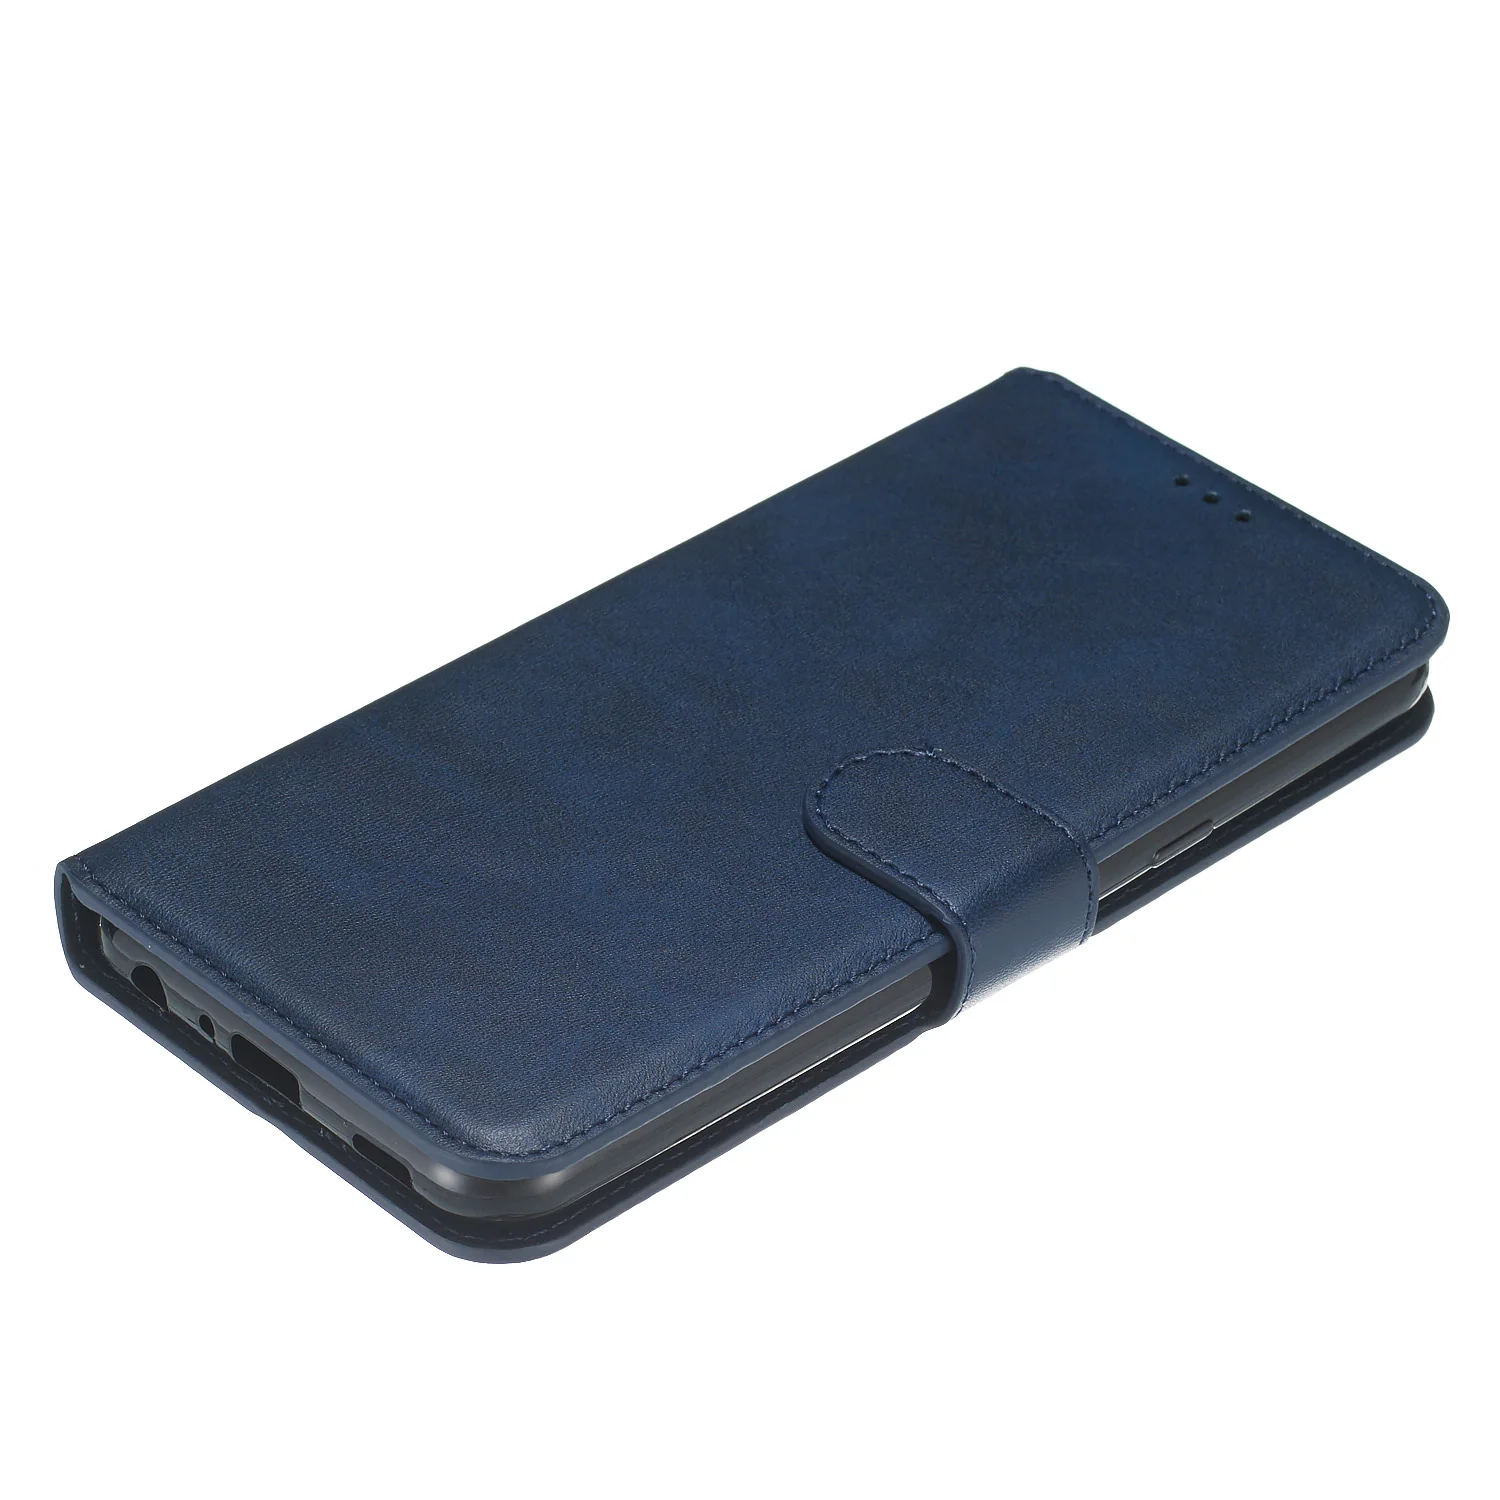 Для пикселей 3A XL Чехол-книжка из искусственной кожи чехол-бумажник чехол для телефона для LG Q60 K50 k40 K12 плюс X4 PU кожаный флип чехол для Coque sony XZ1 XZ2 XZ3 XZ4 крышка